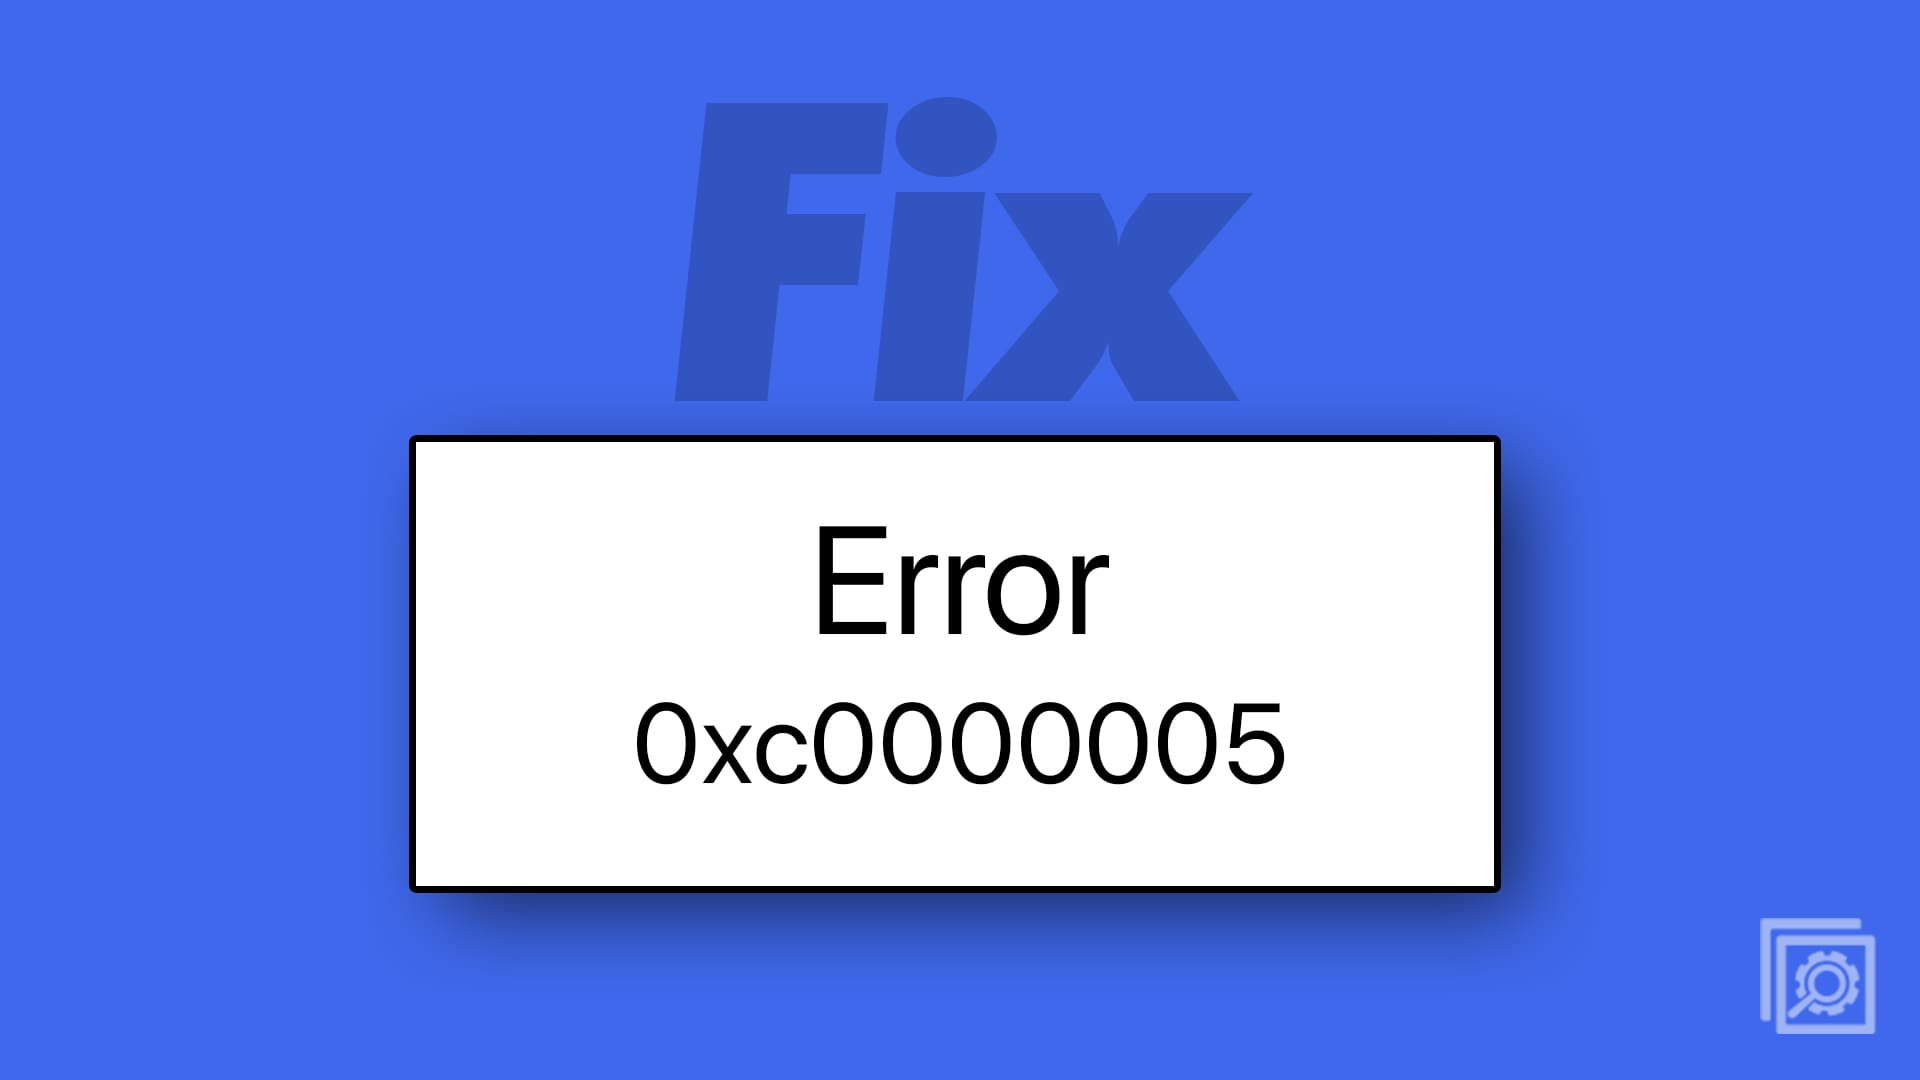 Windows 11: How to Fix Error Code 0xc0000005